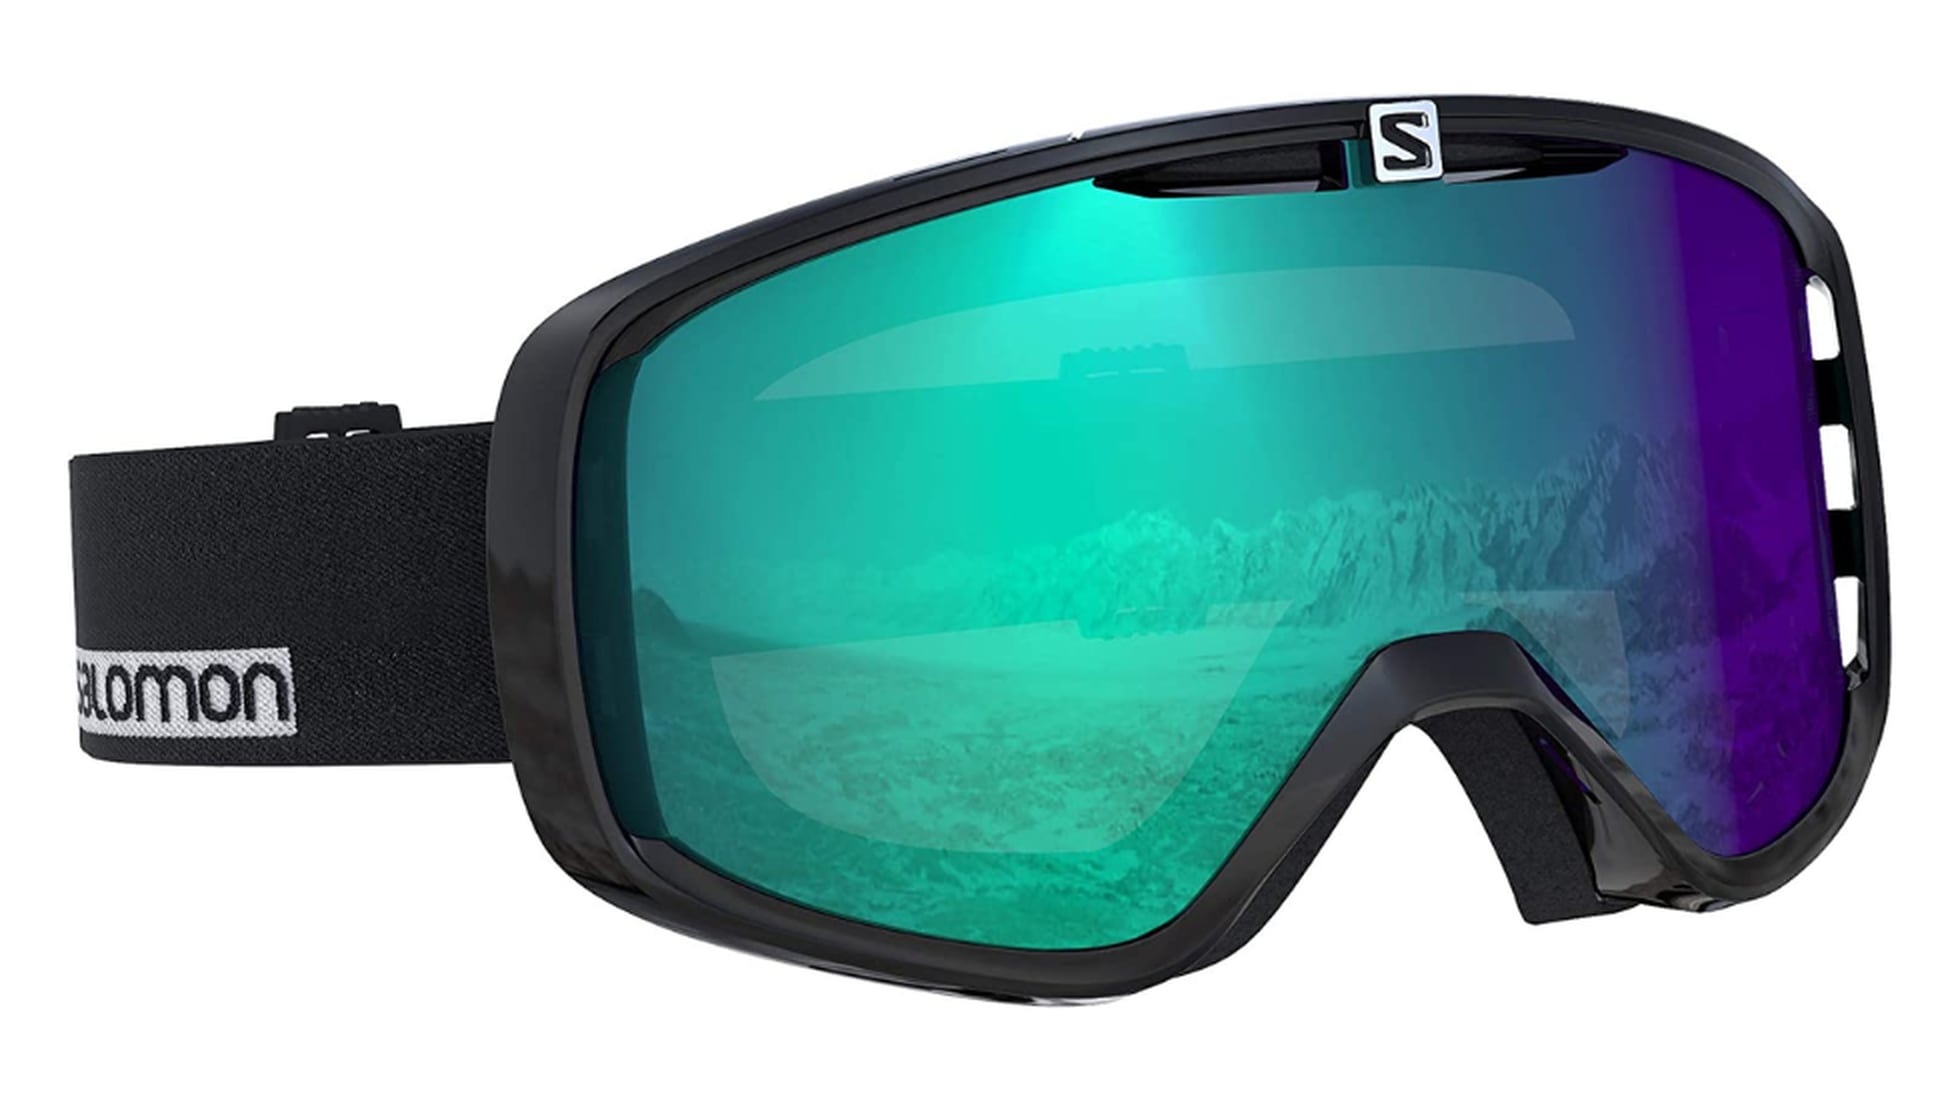 Estas son las seis gafas de esquí para toda la familia mejor valoradas en   por menos de 50 euros, Escaparate: compras y ofertas